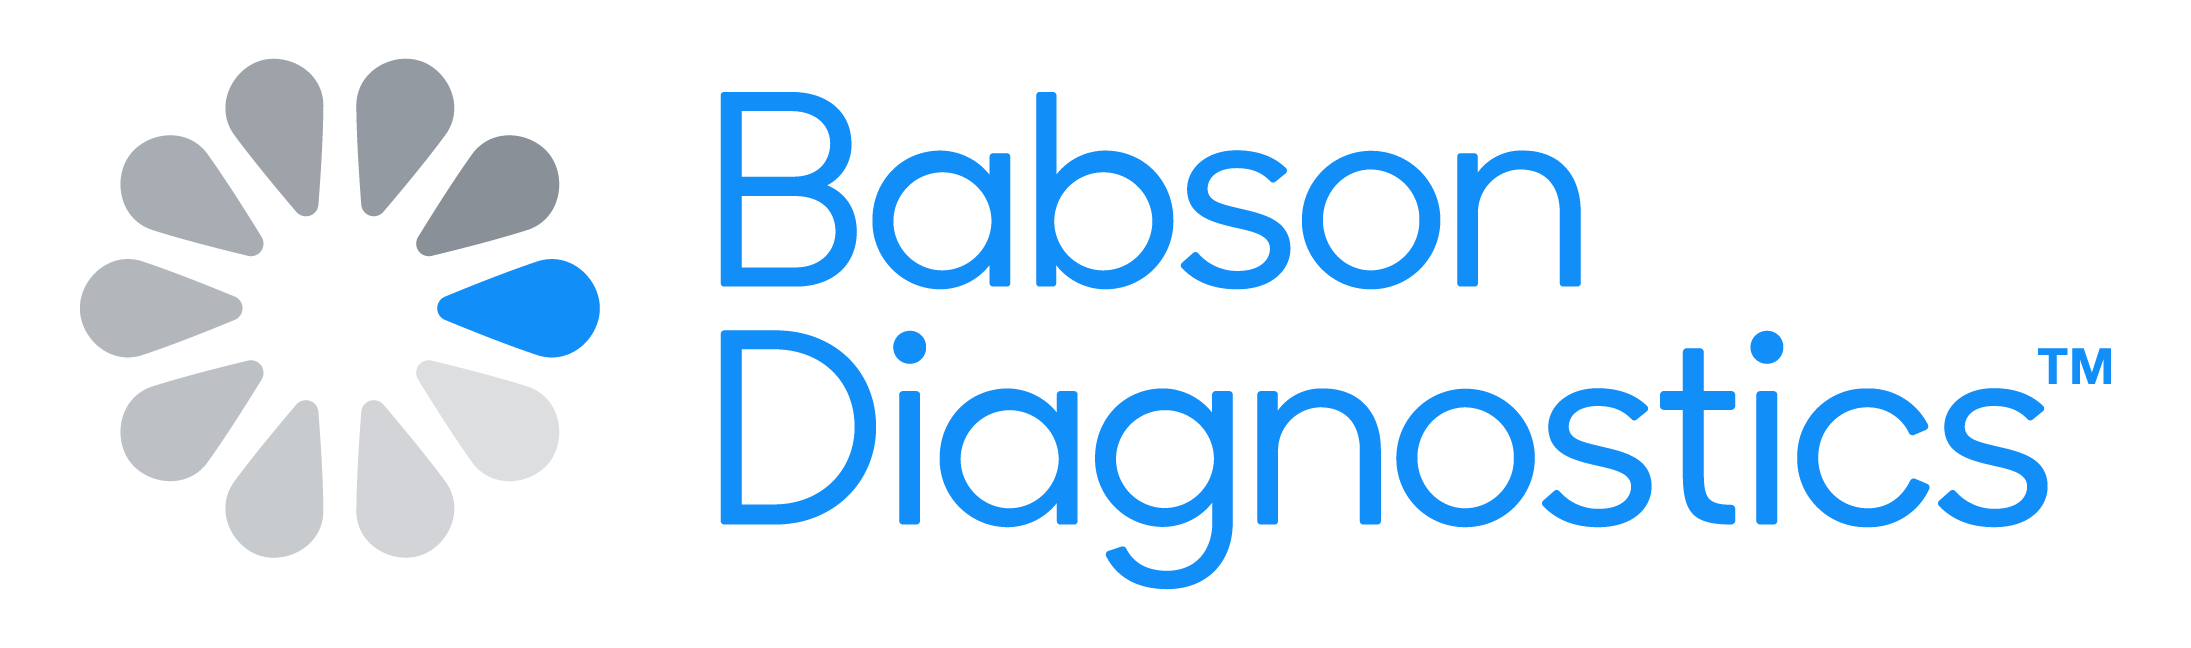 Babson Diagnostics